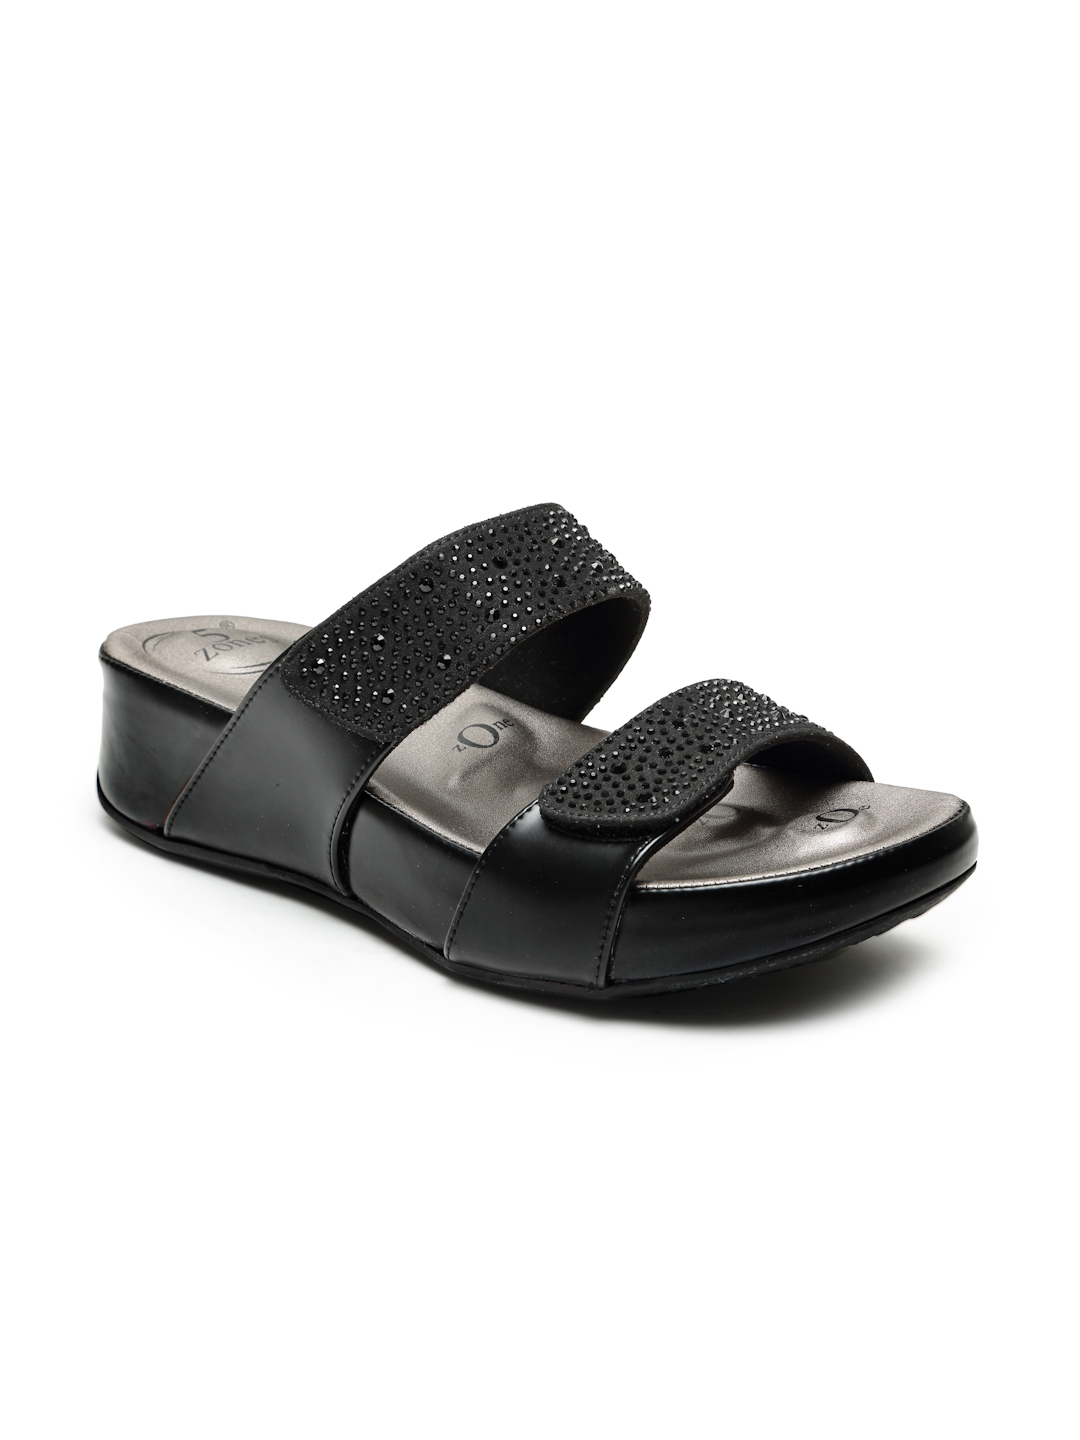 Buy Von Wellx Germany Comfort Women's Black Casual Sandals Paula Online in Ghaziabad